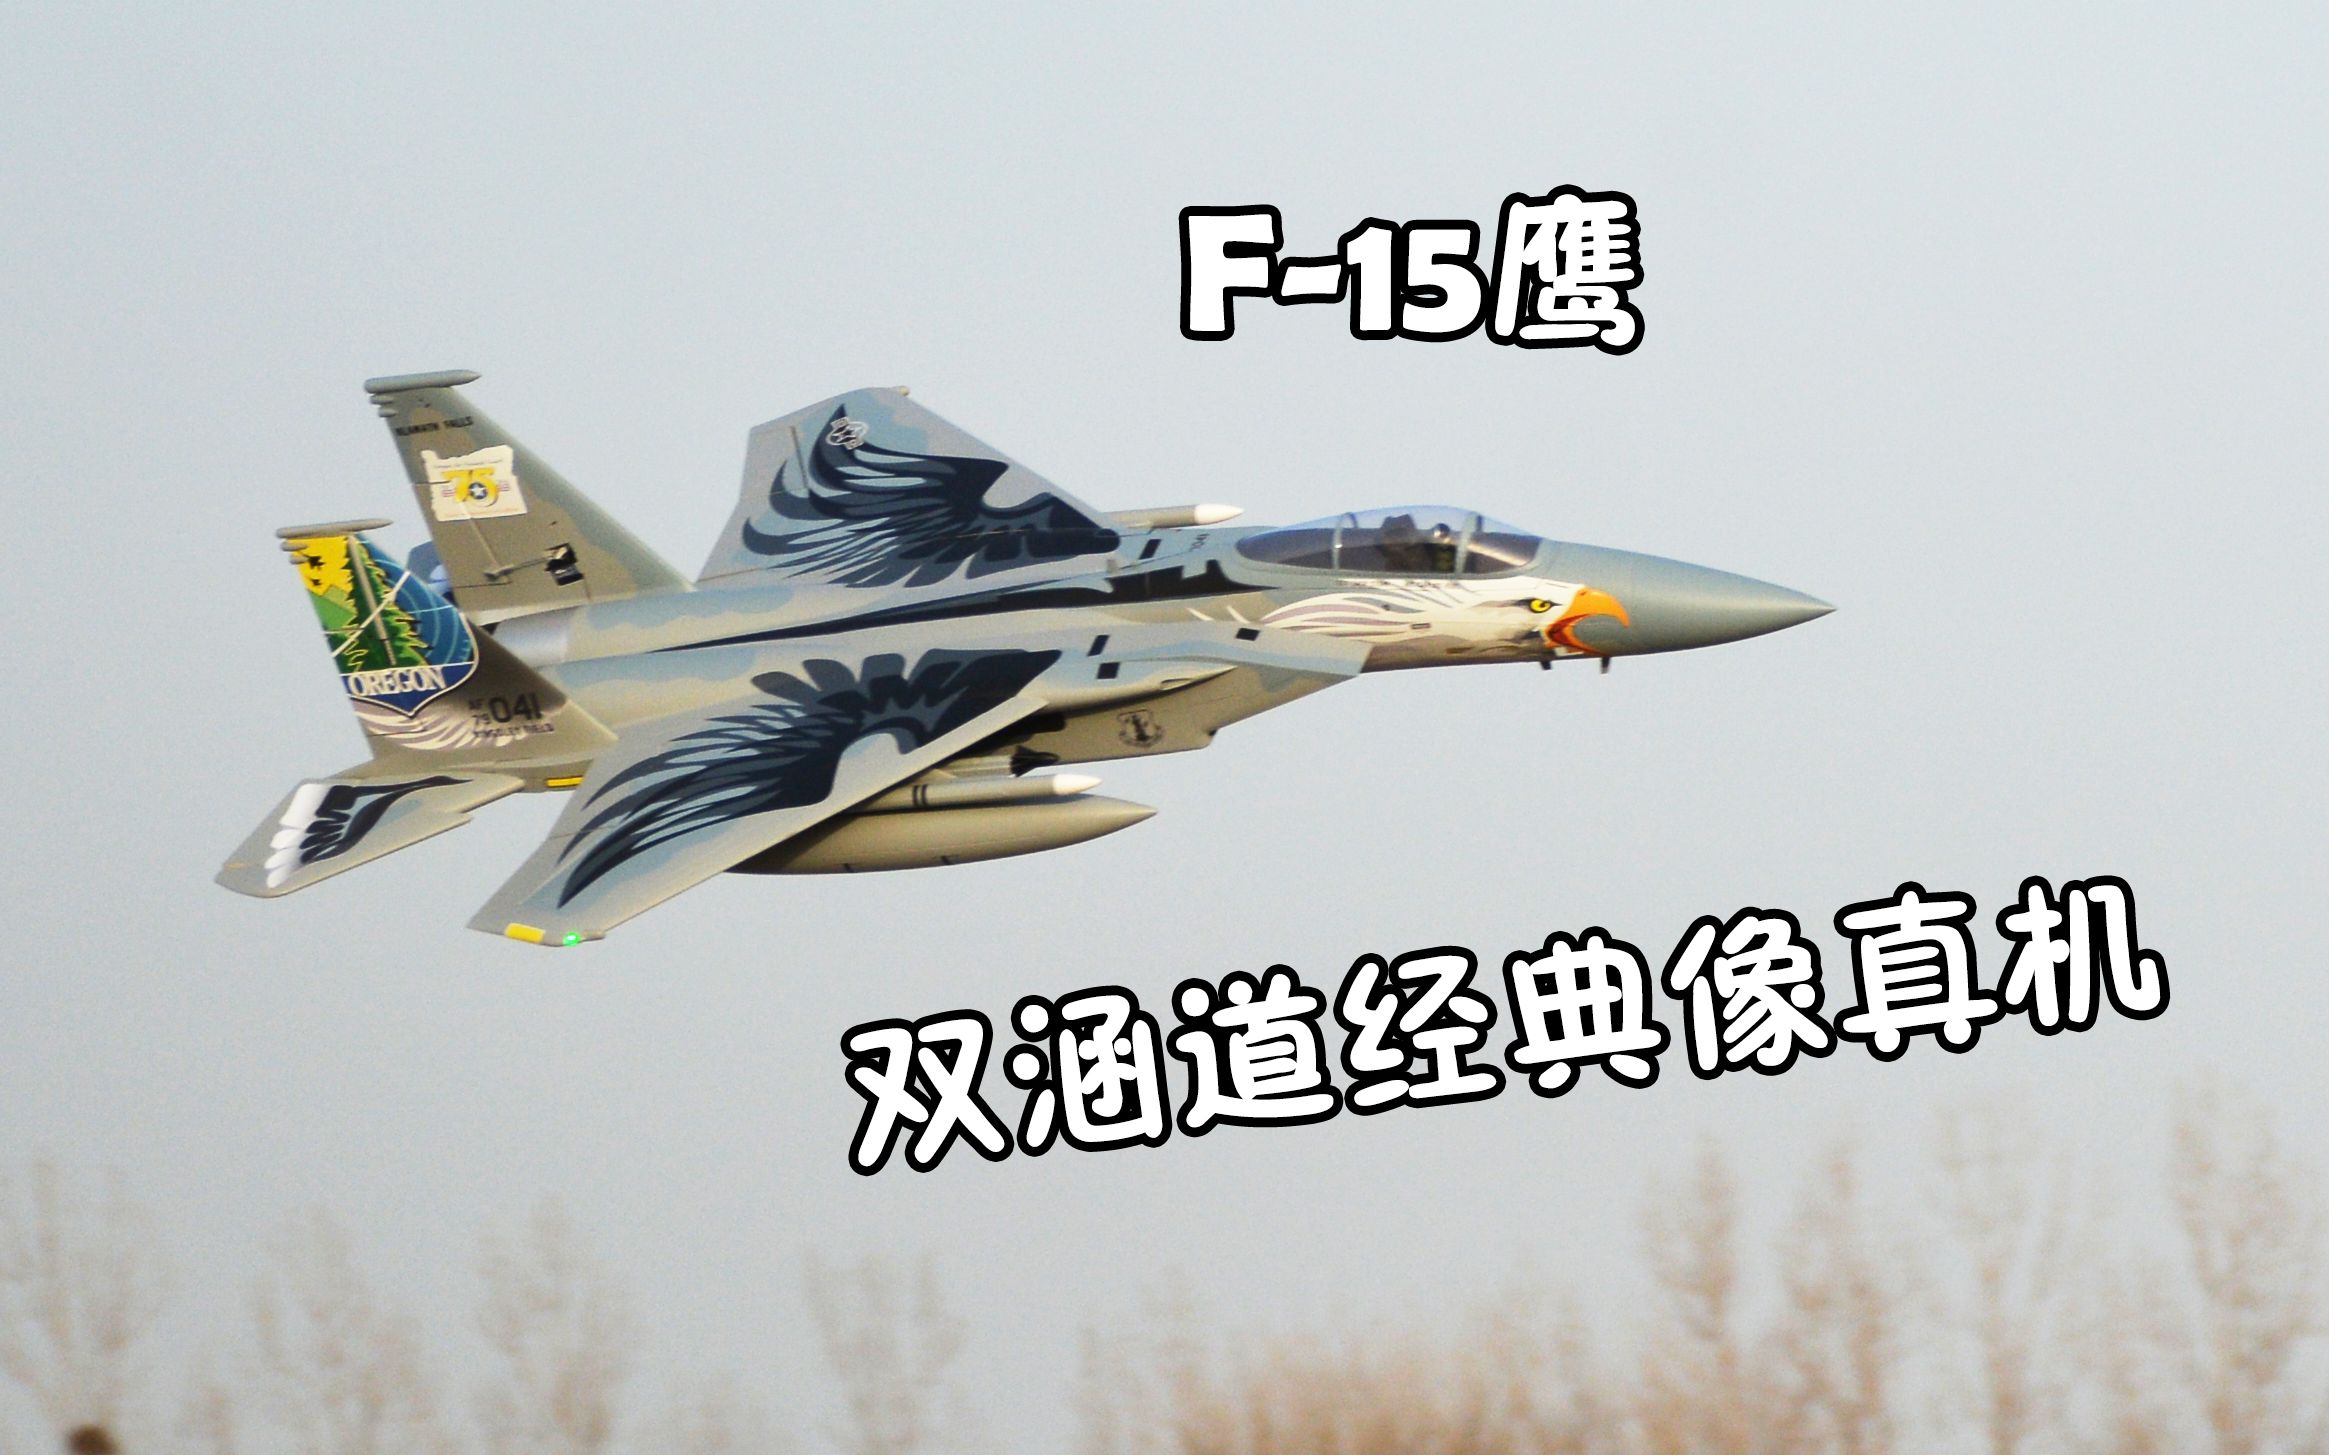 【航模测评】经典机型F-15，超好飞的双64涵道蓝箭航模像真机